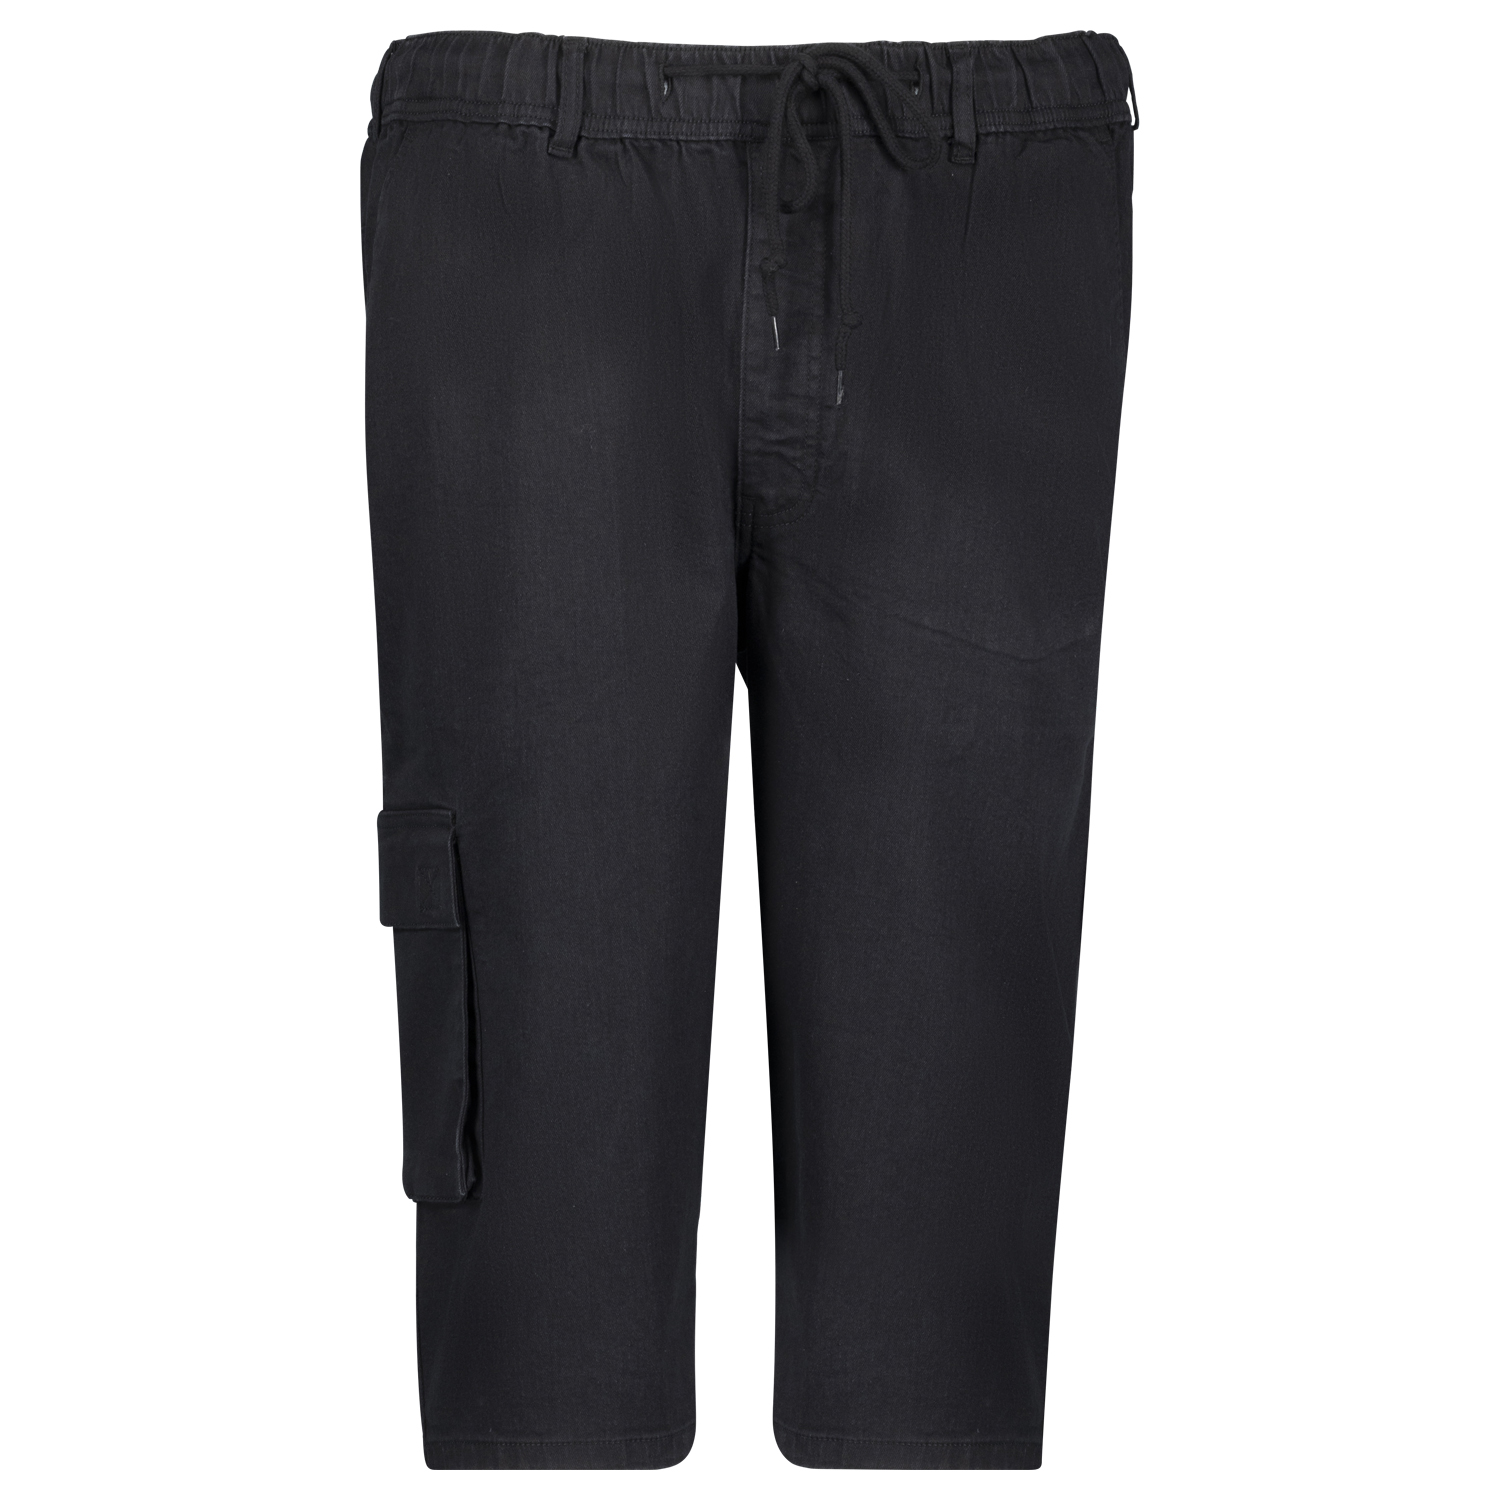 Jogging jeans pantacourt hyperstretch taille élastiquée "DALLAS" noir by Adamo grandes tailles jusqu'au 12XL